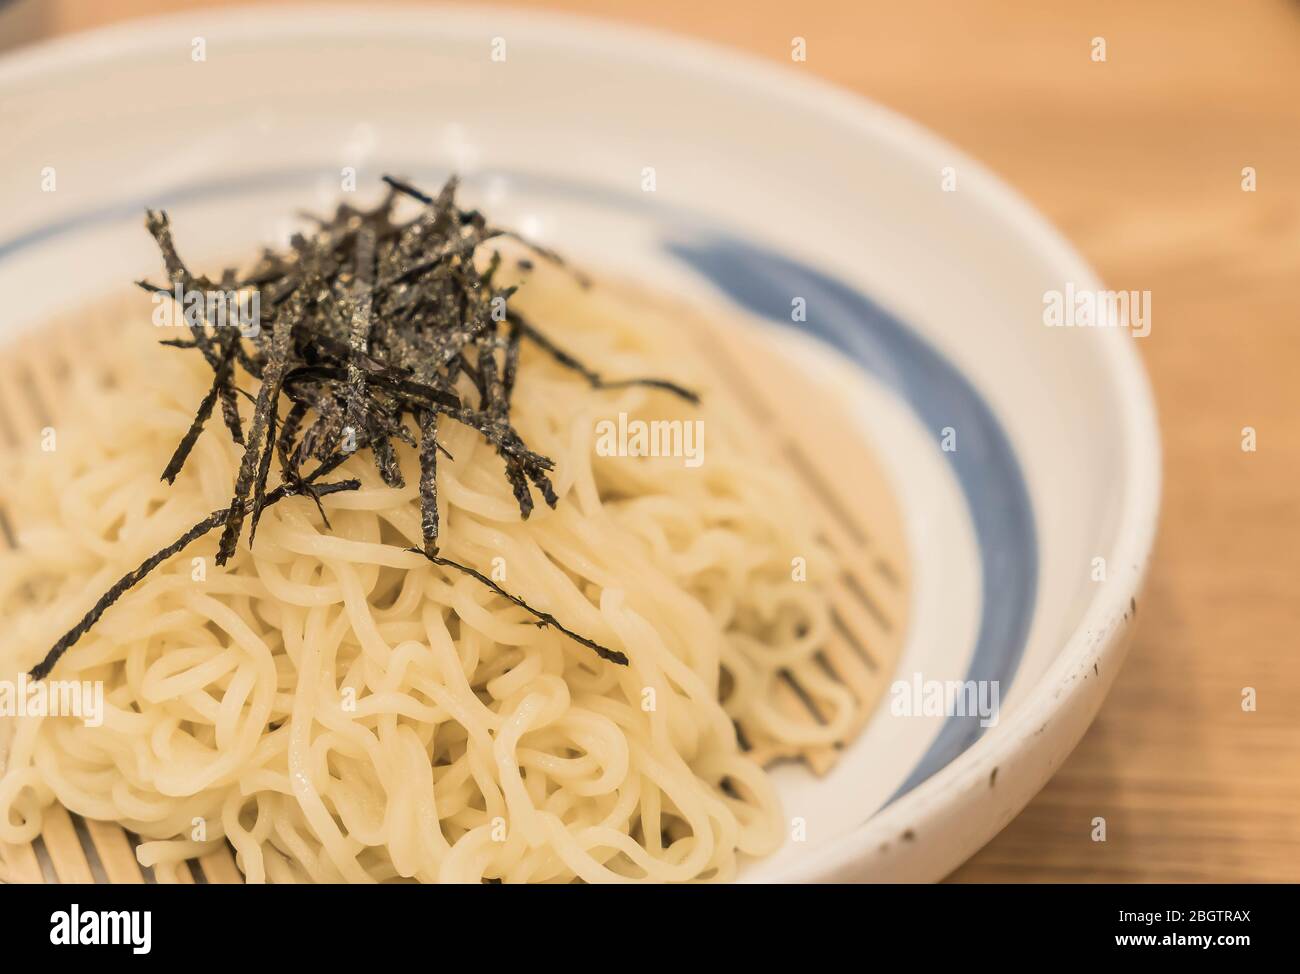 Kalte Ramen-Nudel - Japanisches Essen Stockfoto